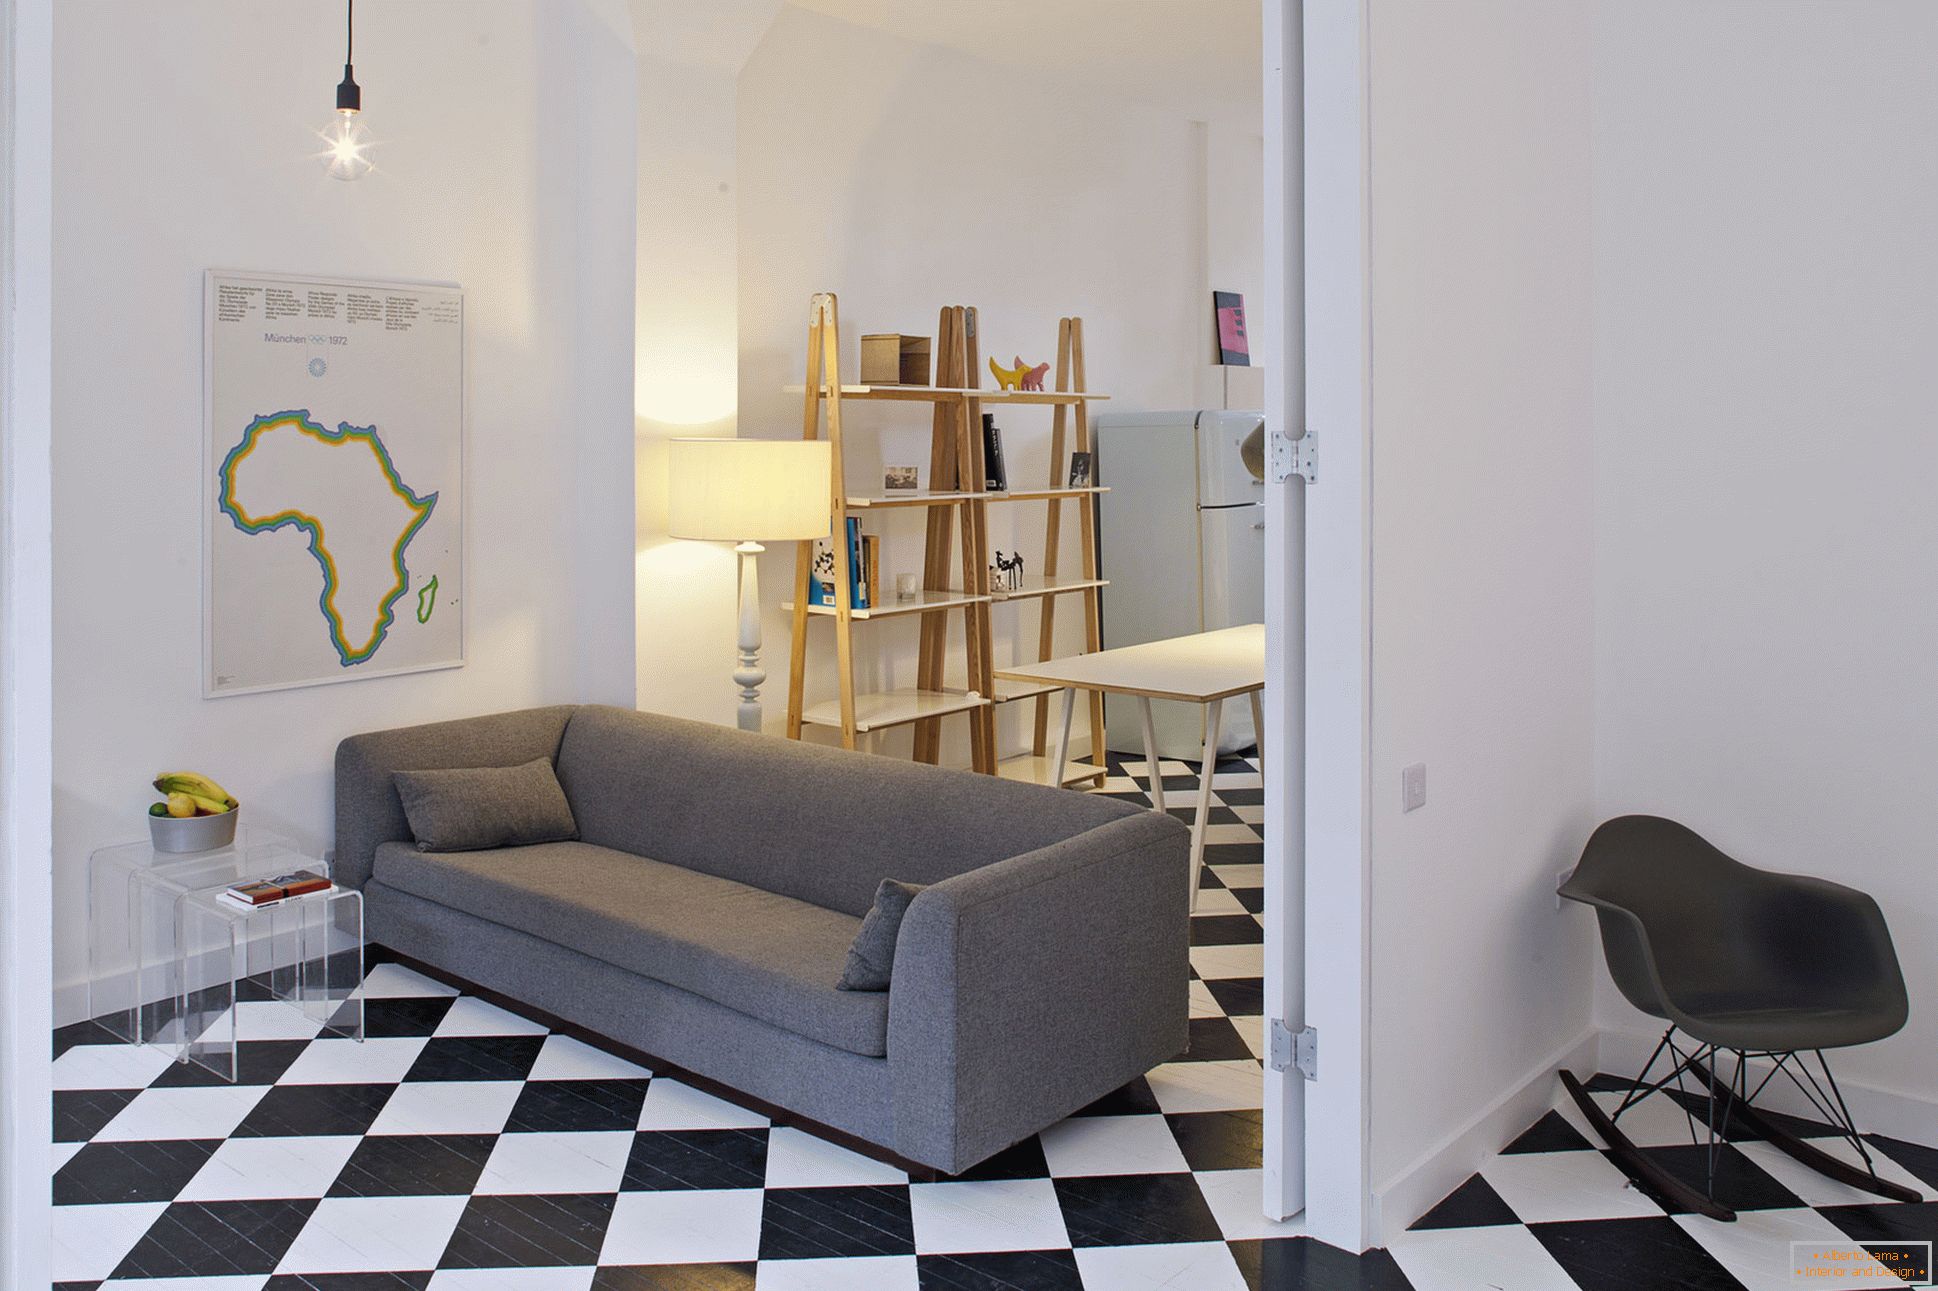 City View House - panetteria, trasformata in un appartamento studio residenziale, Londra, Regno Unito